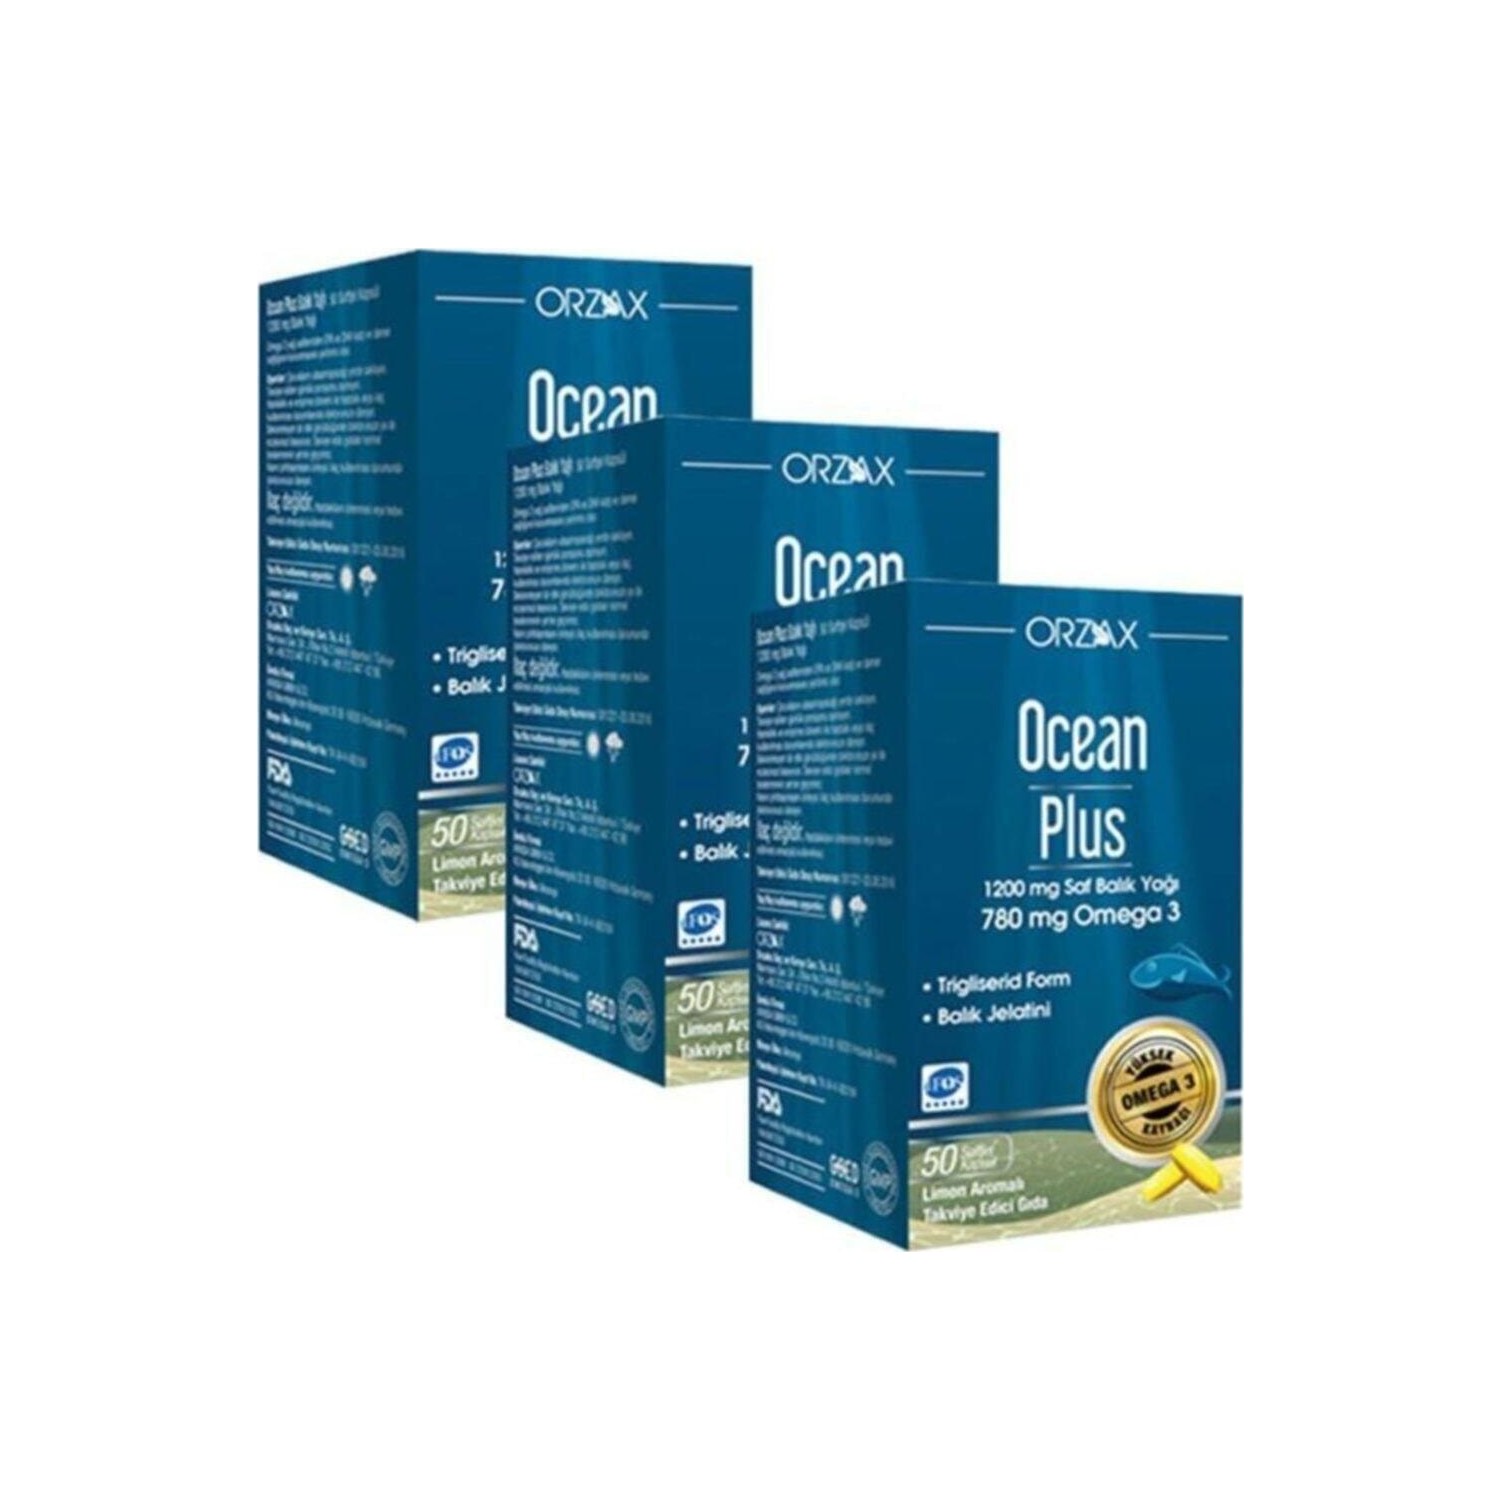 Омега-3 Plus Orzax 1200 мг, 3 упаковки по 50 капсул фото